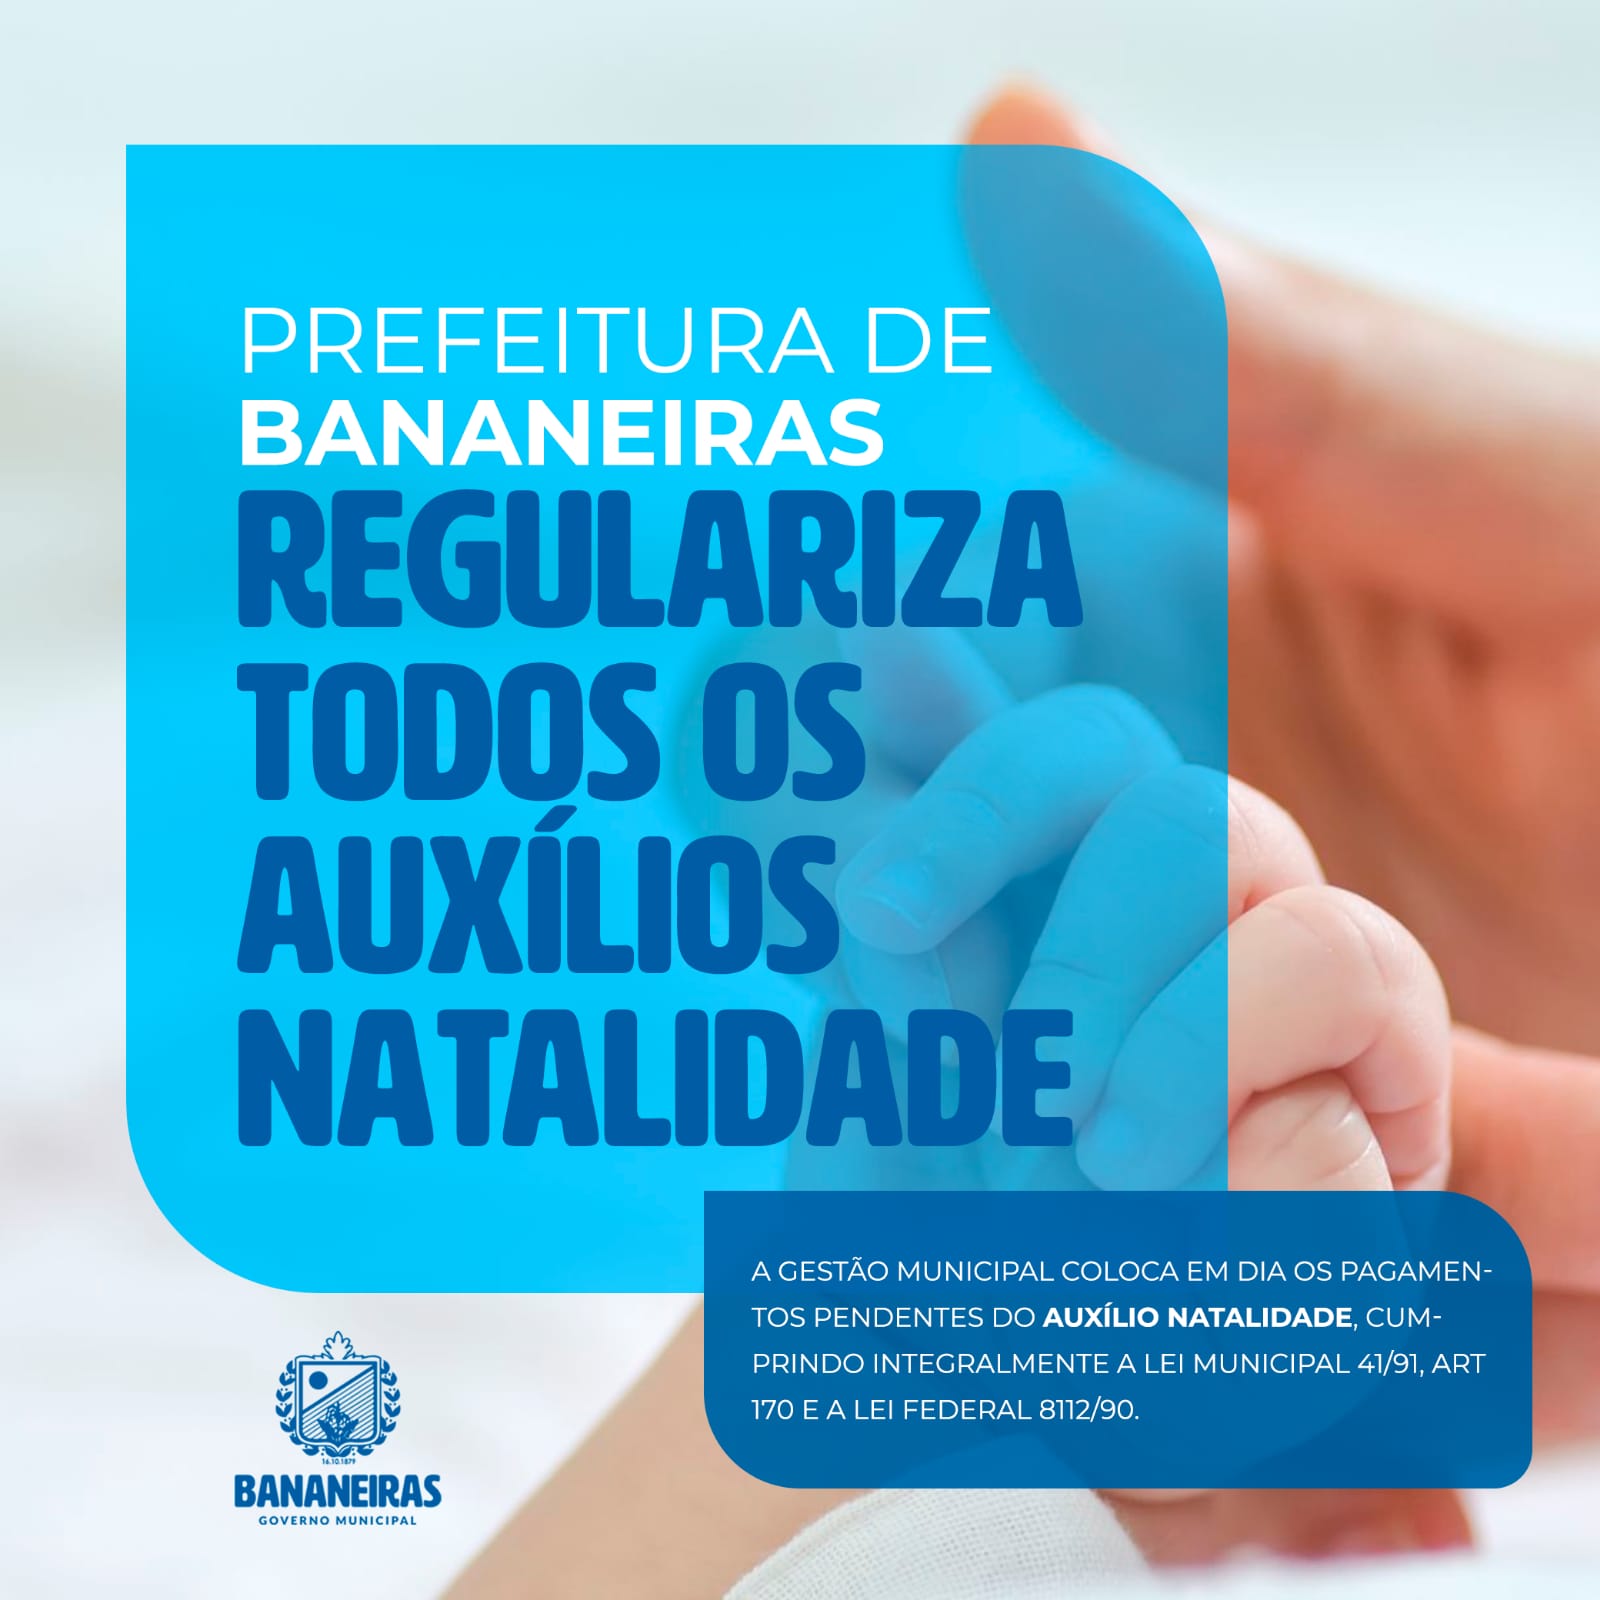 Boa notícia: Prefeitura de Bananeiras regularizou todos os auxílios natalidade que estavam pendentes